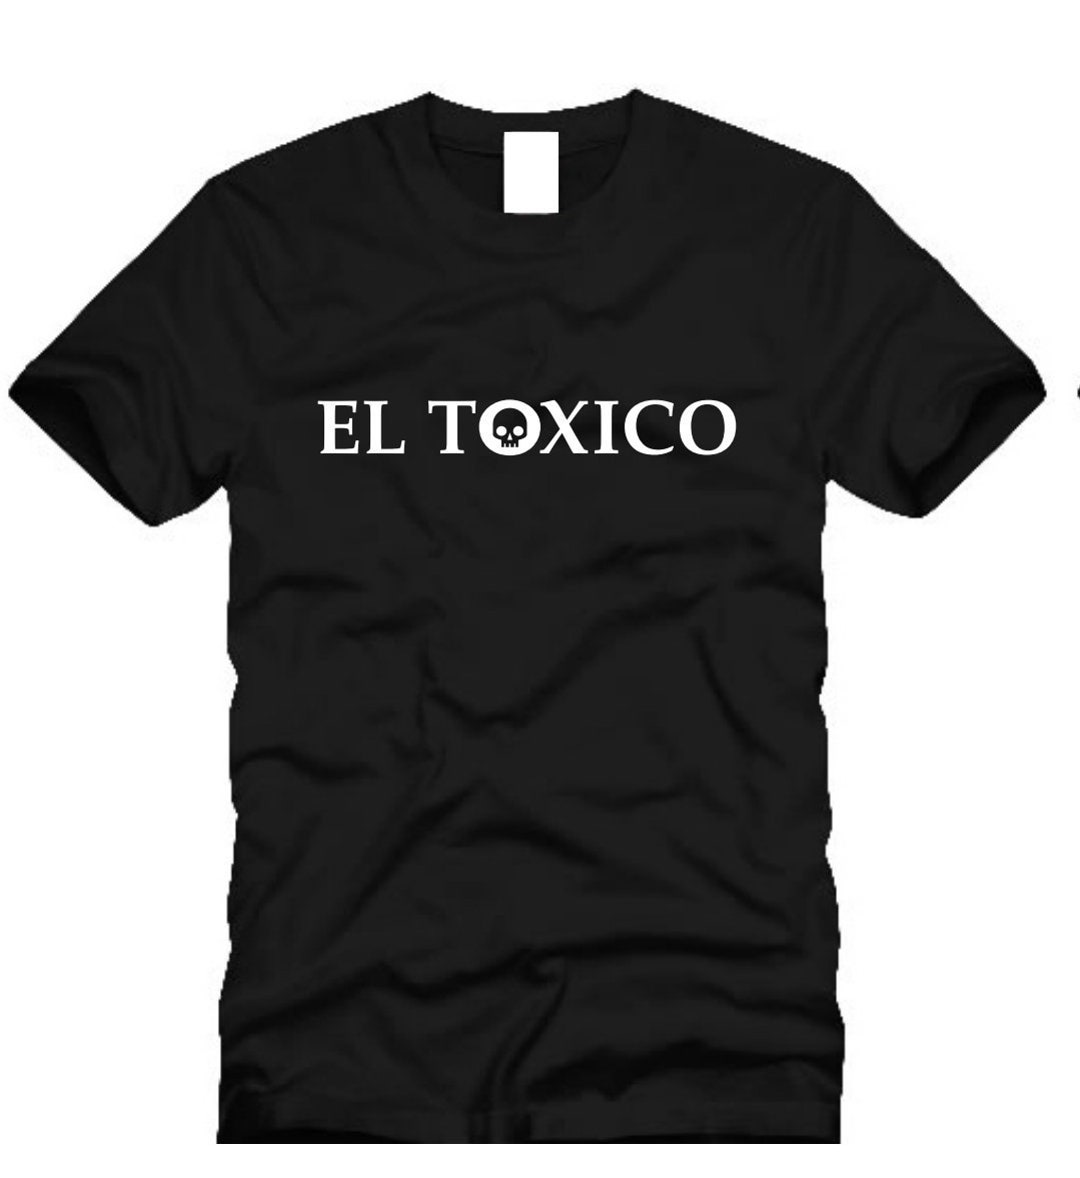 EL TOXICO PLAYERA NEGRA LOGO DIABLO EL TOXICO OFFICIAL EN BLANCO 100%  ALGODON